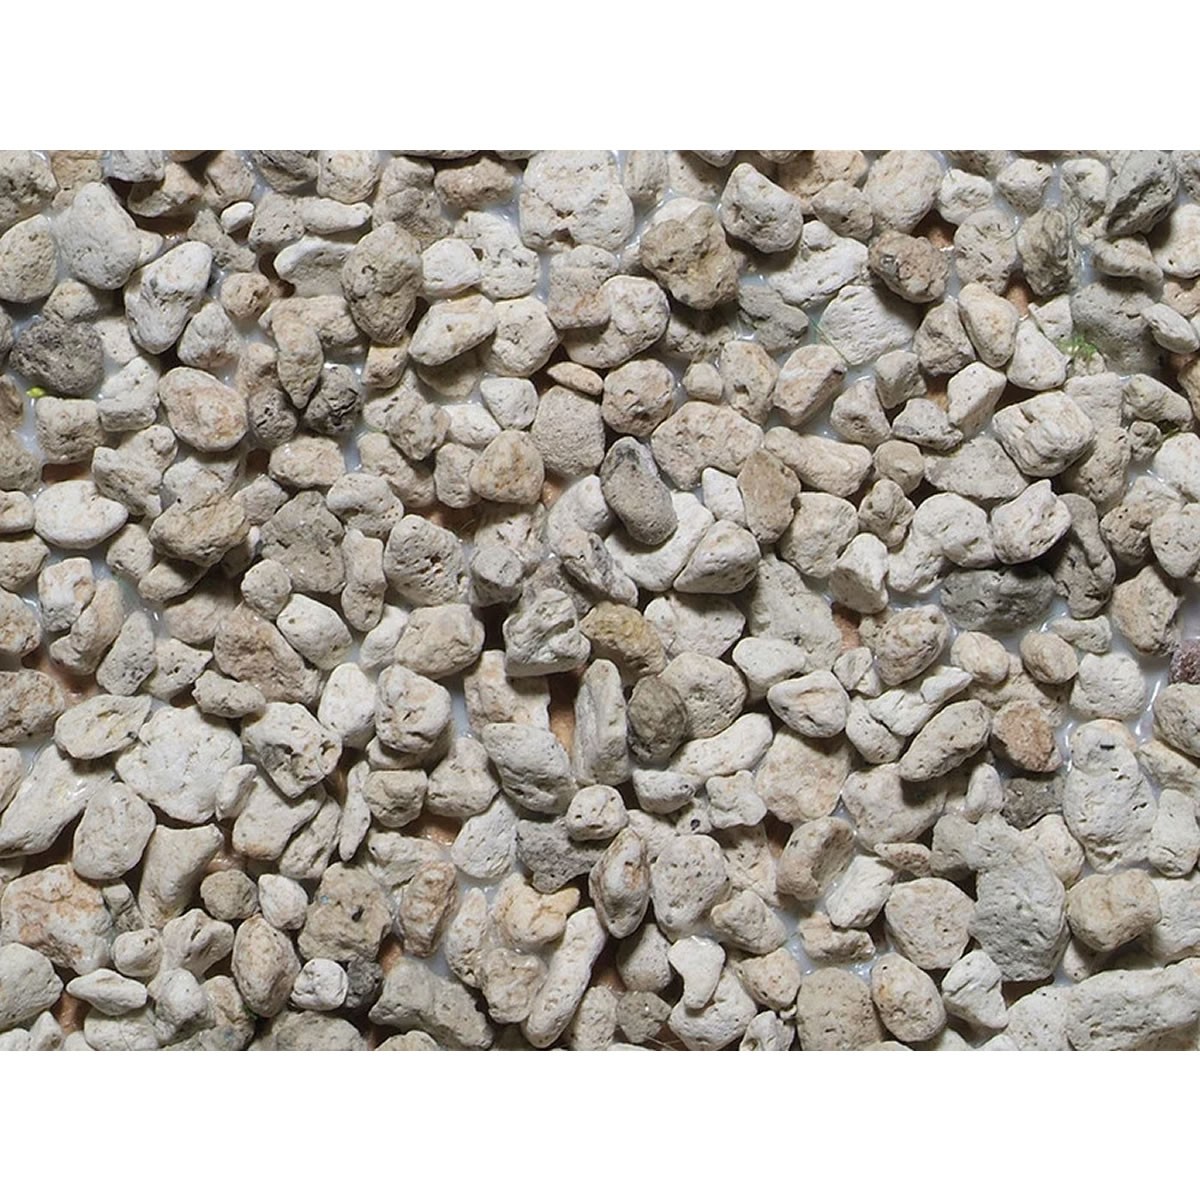 NOCH Profi-Rocks “Scree” medium - Πέτρες Μακέτας